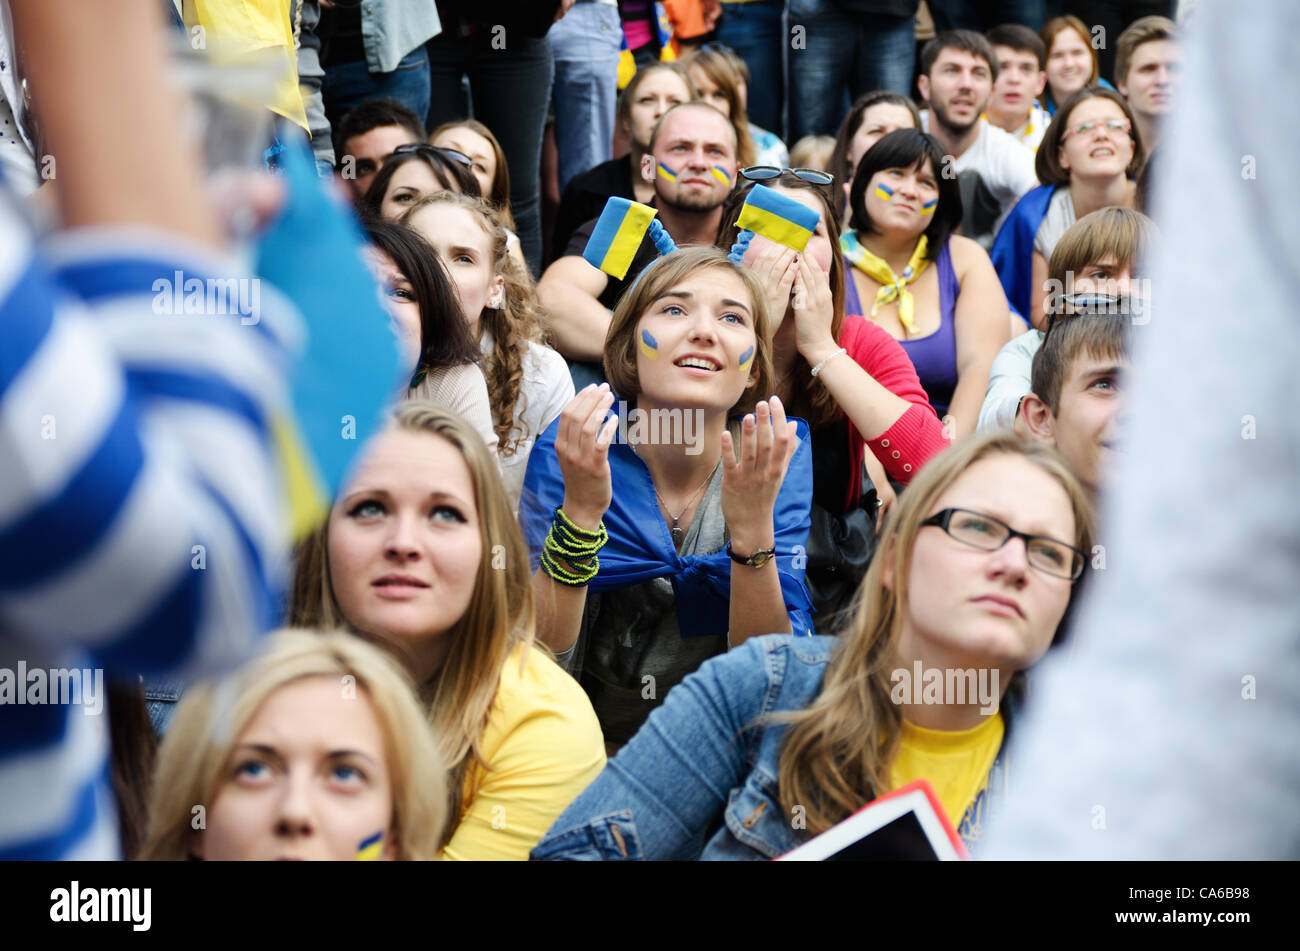 KIEV, UCRAINA - 15 giugno: Ucraino ventole nella zona della ventola a Kiev Guarda la UEFA EURO 2012 Gruppo D match tra Ucraina e Francia / Foto di Oleksandr Rupeta Foto Stock